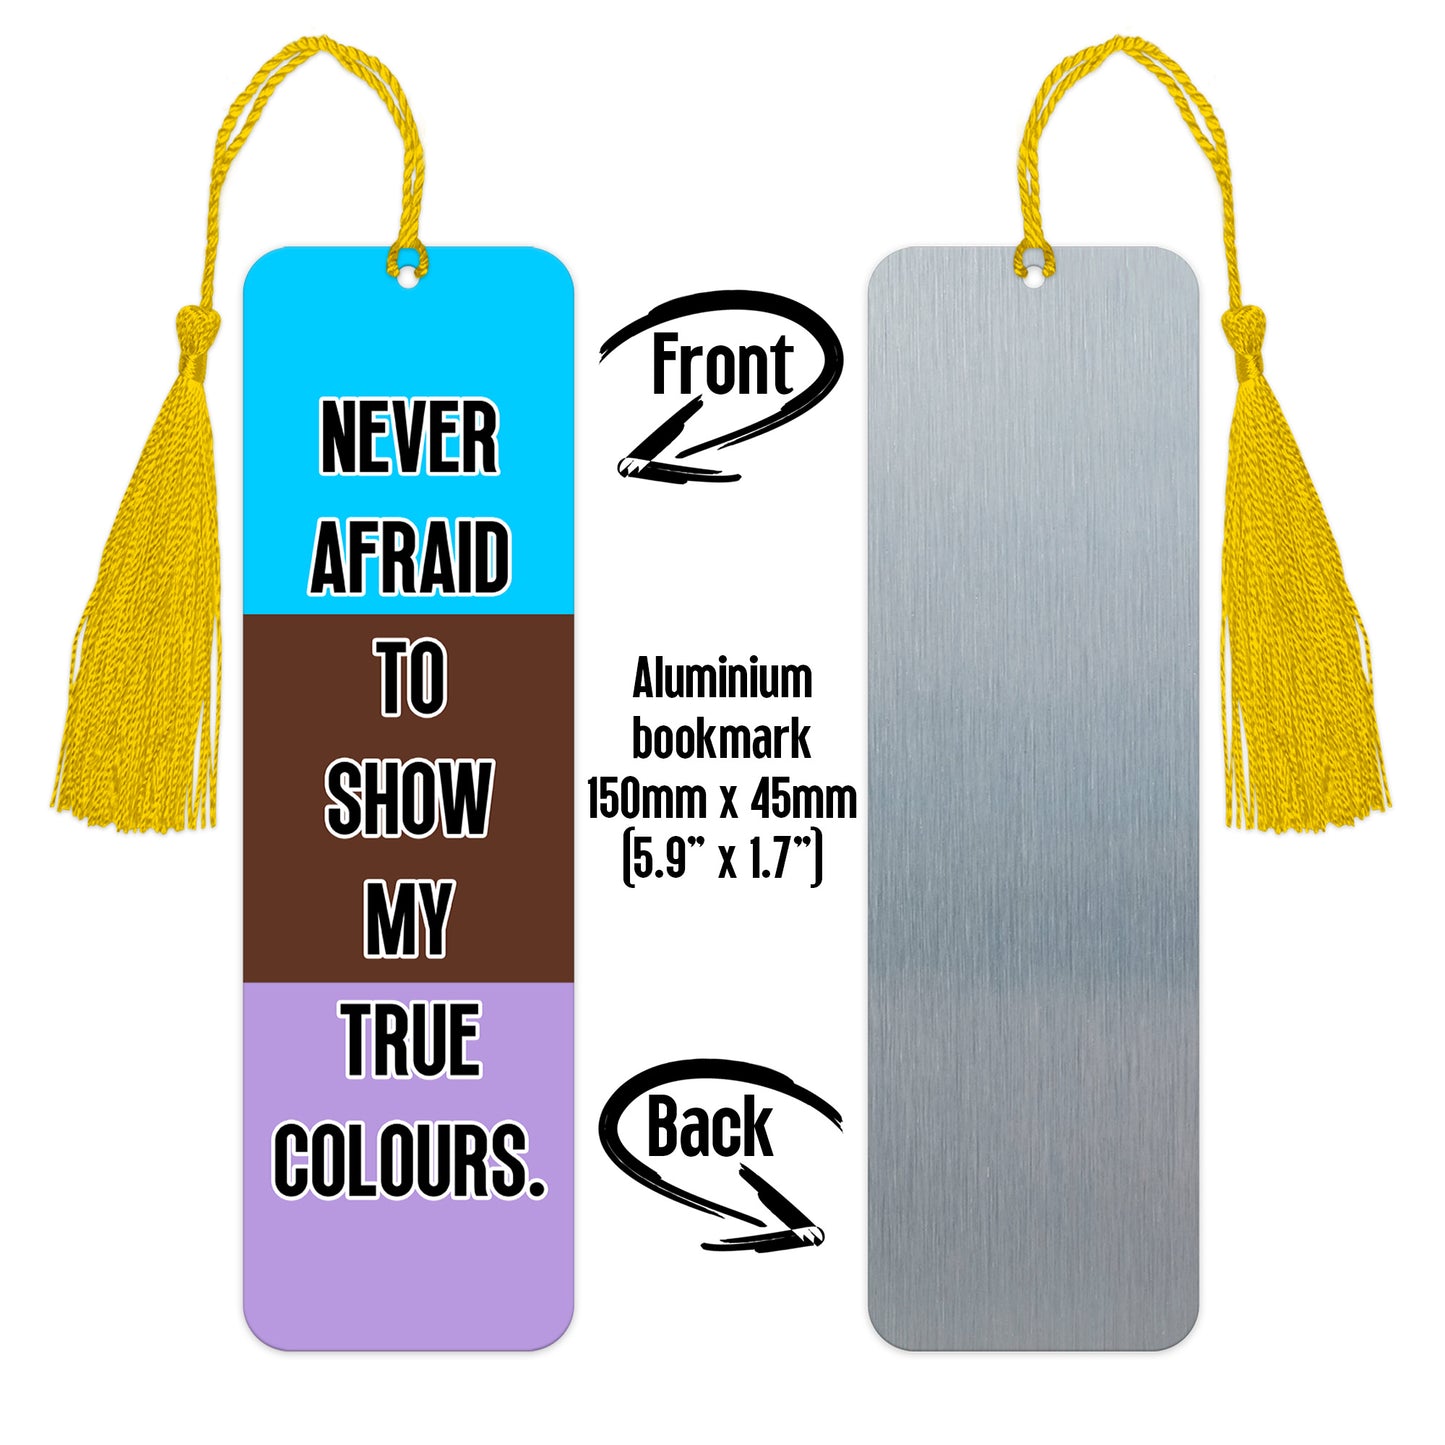 Androsexual pride luxury aluminium bookmark never afraid to show my true colours